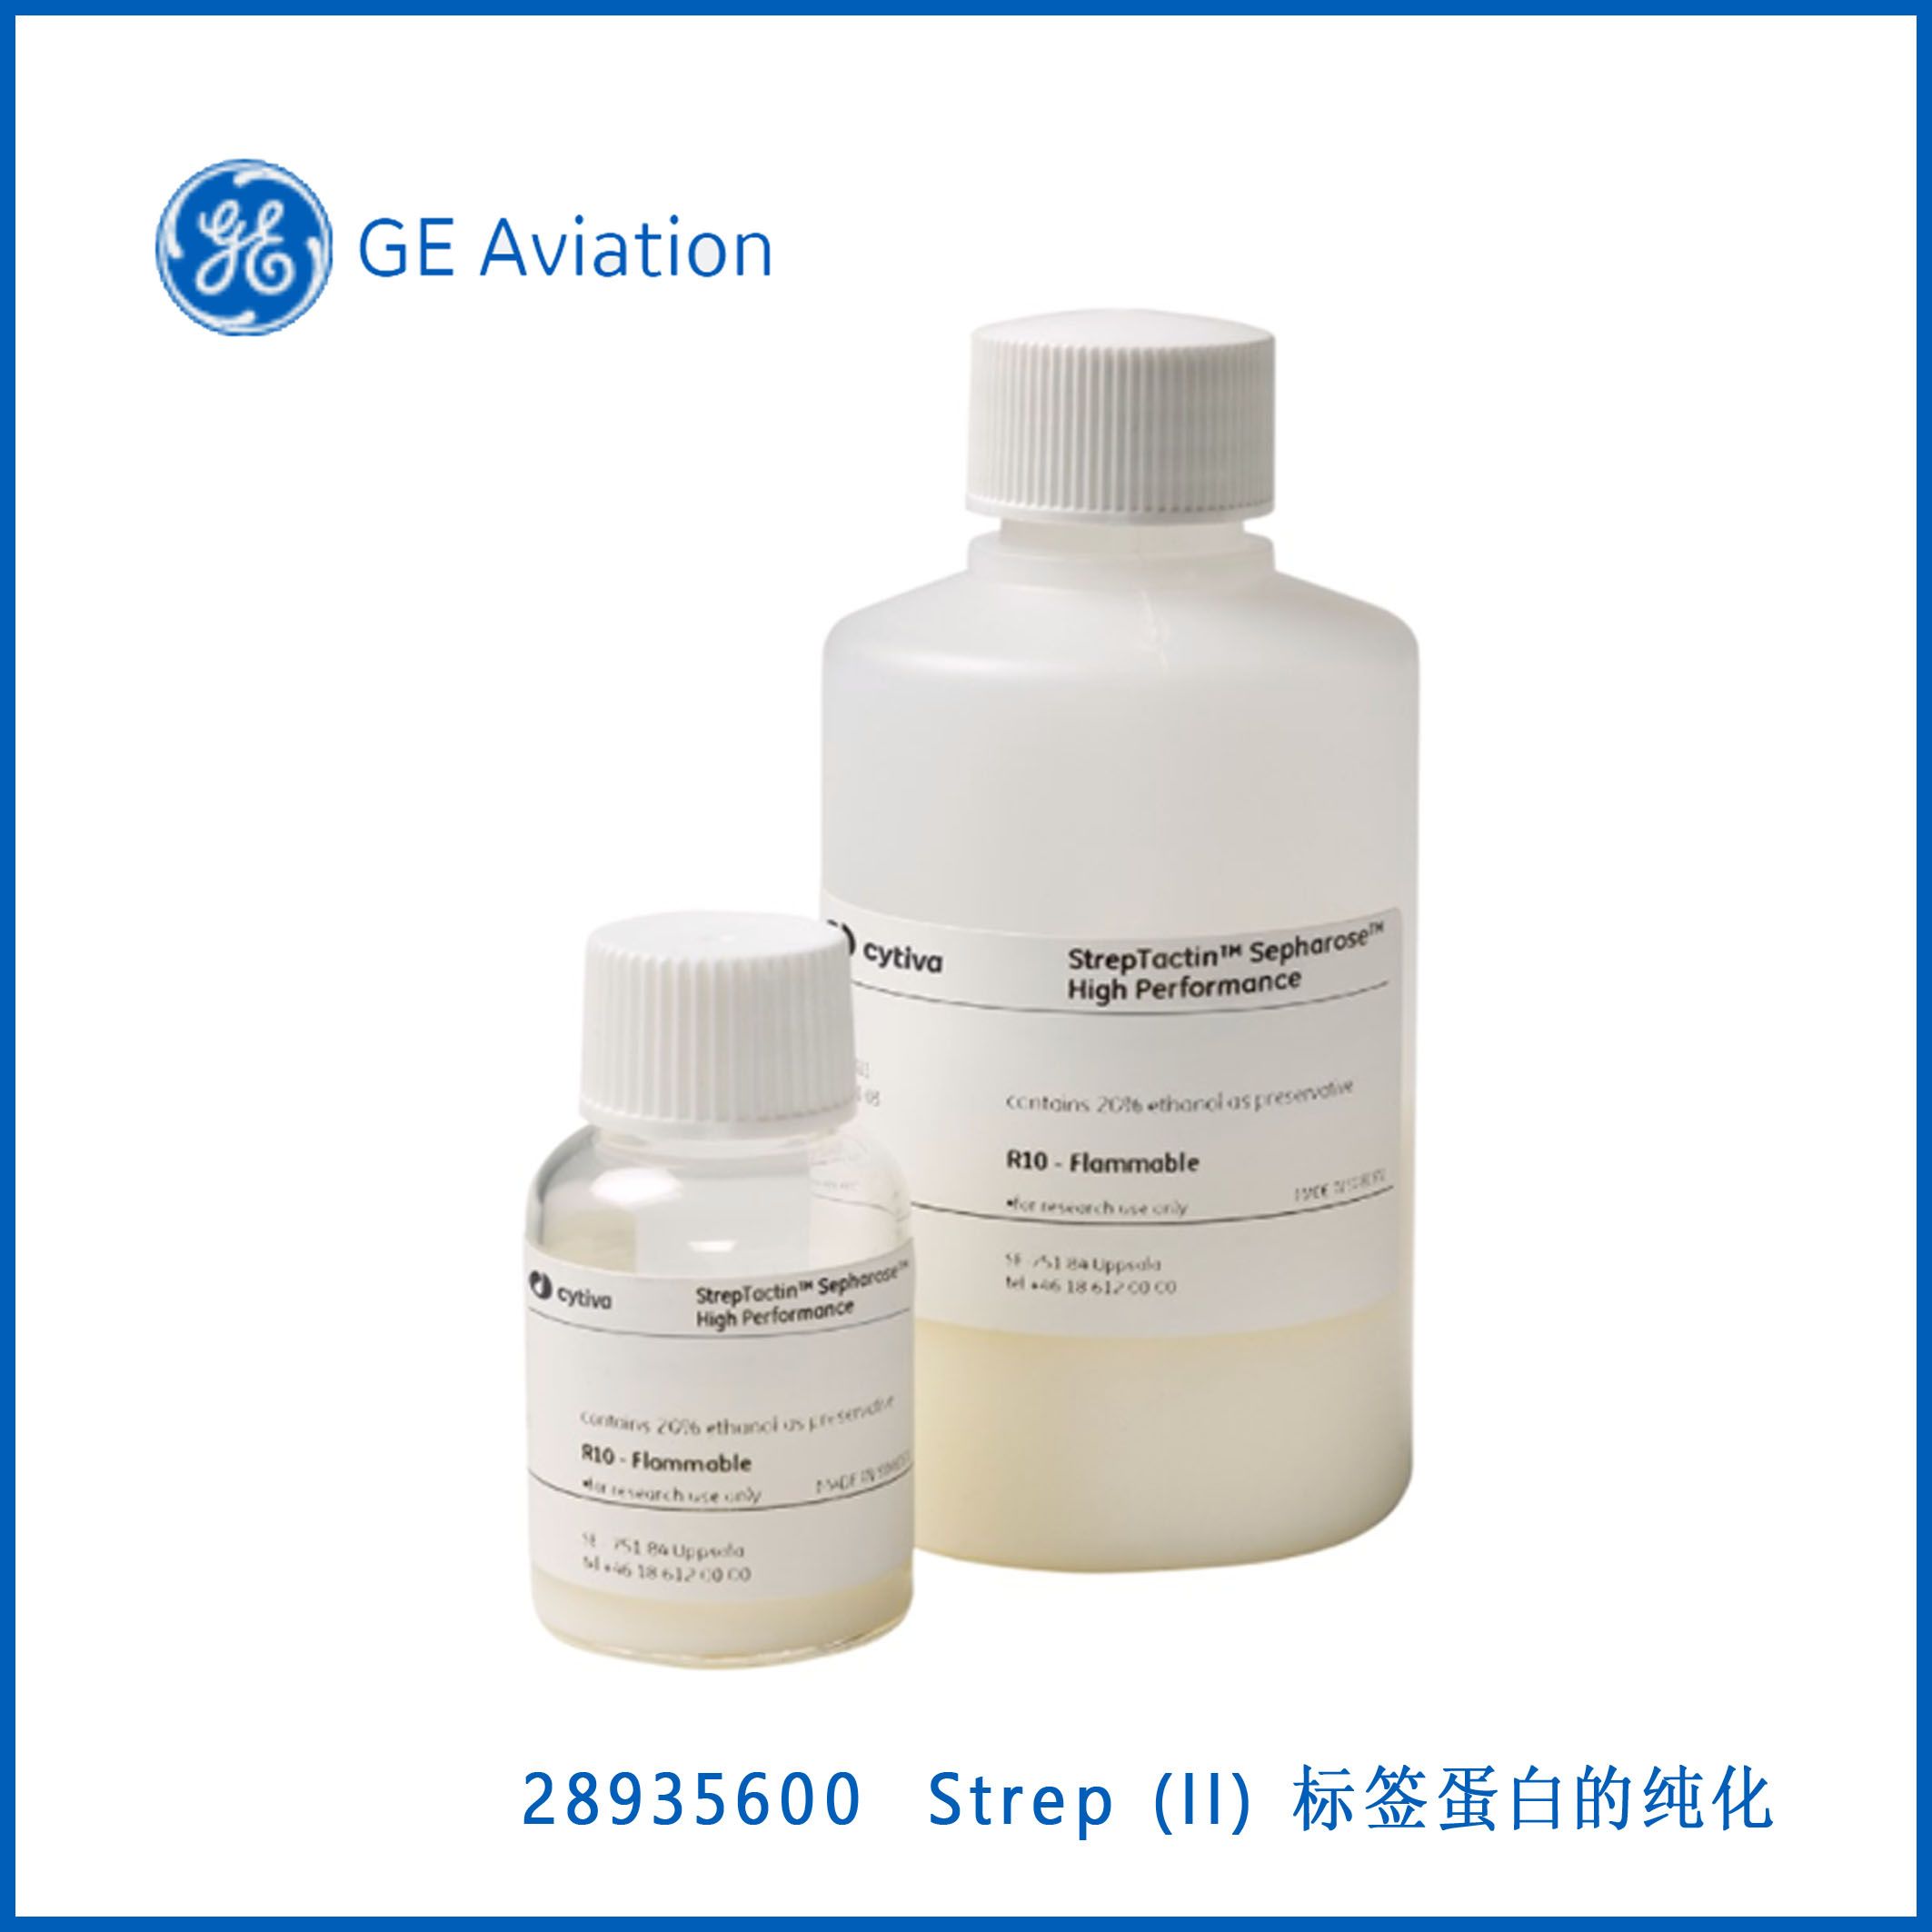 GE28935600StrepTactin Sepharose® High Performance, Strep (II) 标签蛋白的纯化，现货